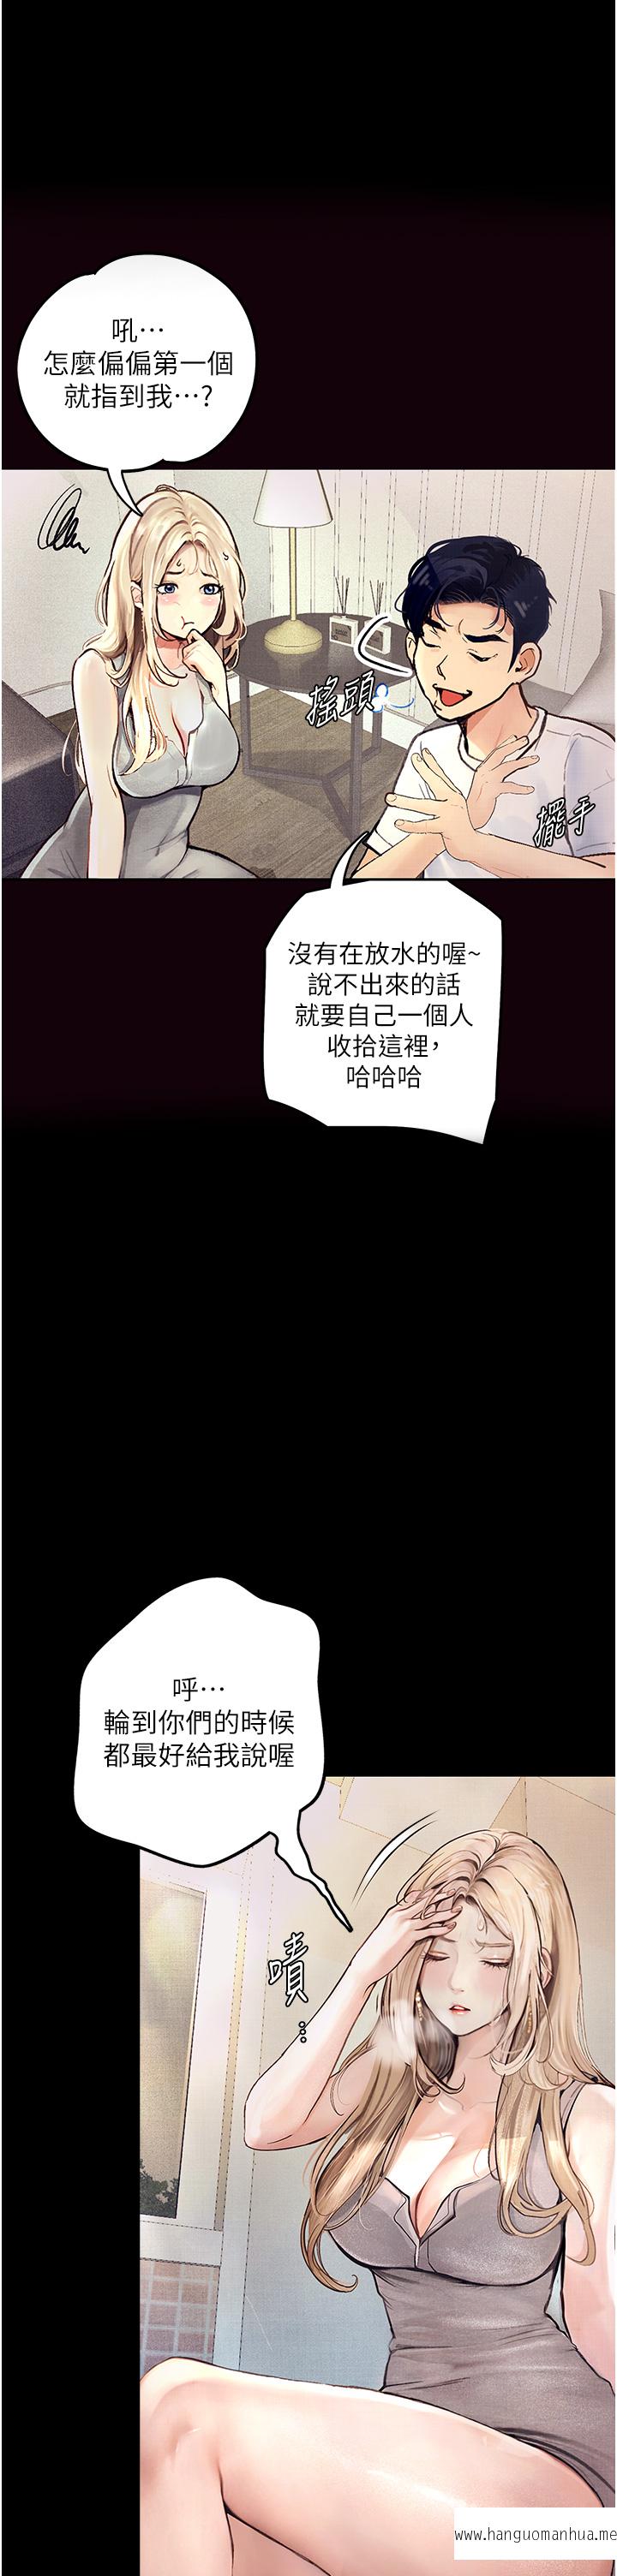 韩国漫画堕落物语韩漫_堕落物语-第1话-欲求不满的OL在线免费阅读-韩国漫画-第40张图片